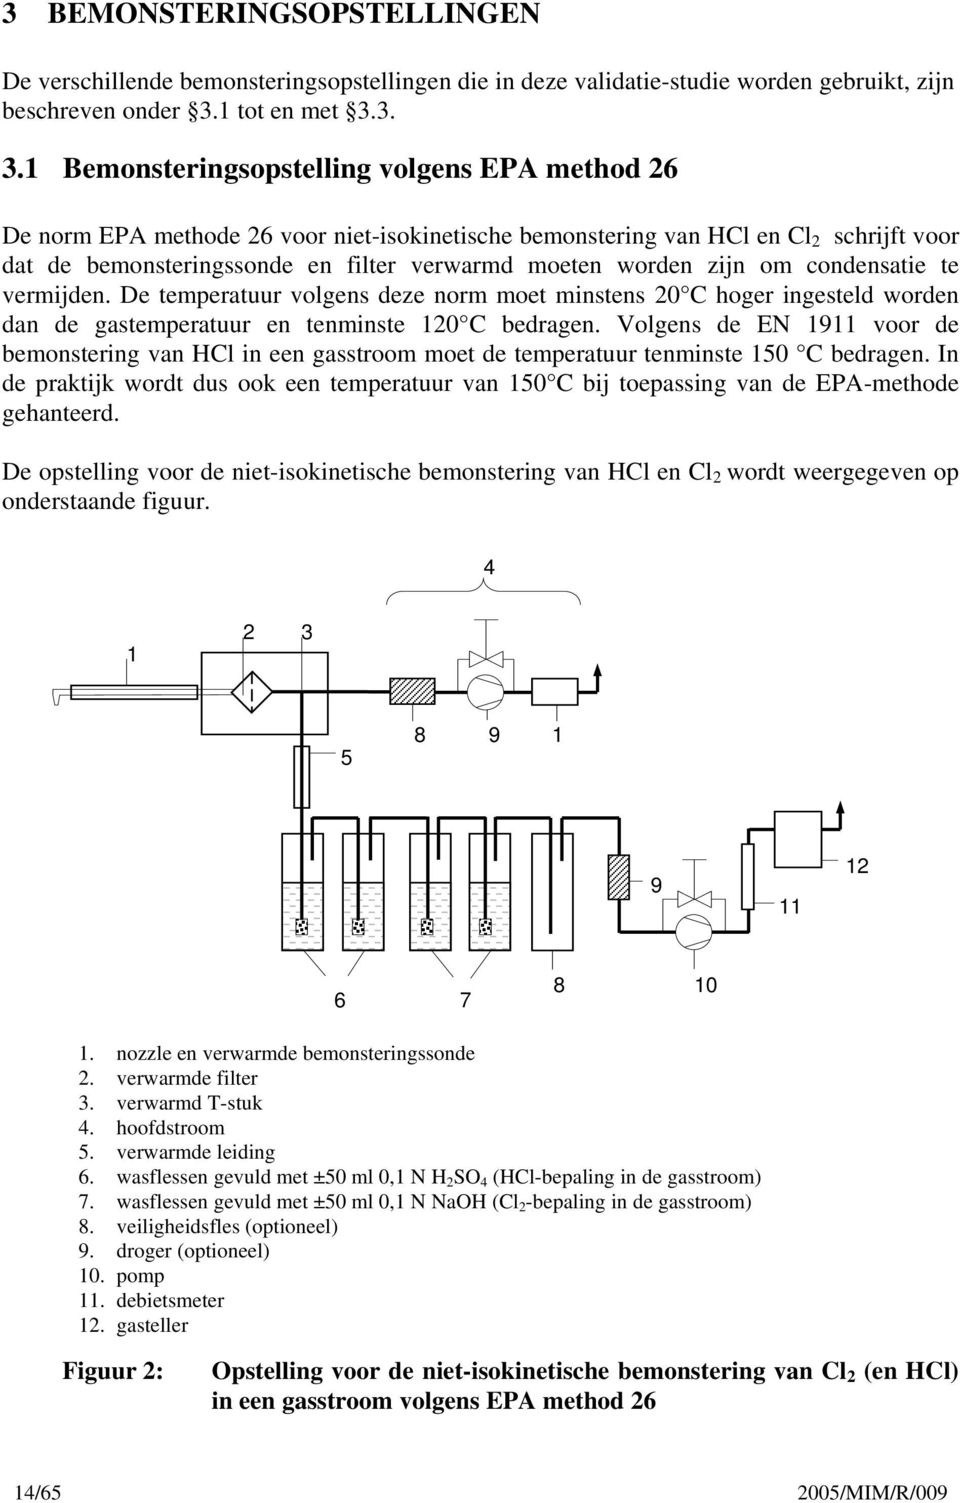 3. 3.1 Bemonsteringsopstelling volgens EPA method 26 De norm EPA methode 26 voor niet-isokinetische bemonstering van HCl en Cl 2 schrijft voor dat de bemonsteringssonde en filter verwarmd moeten